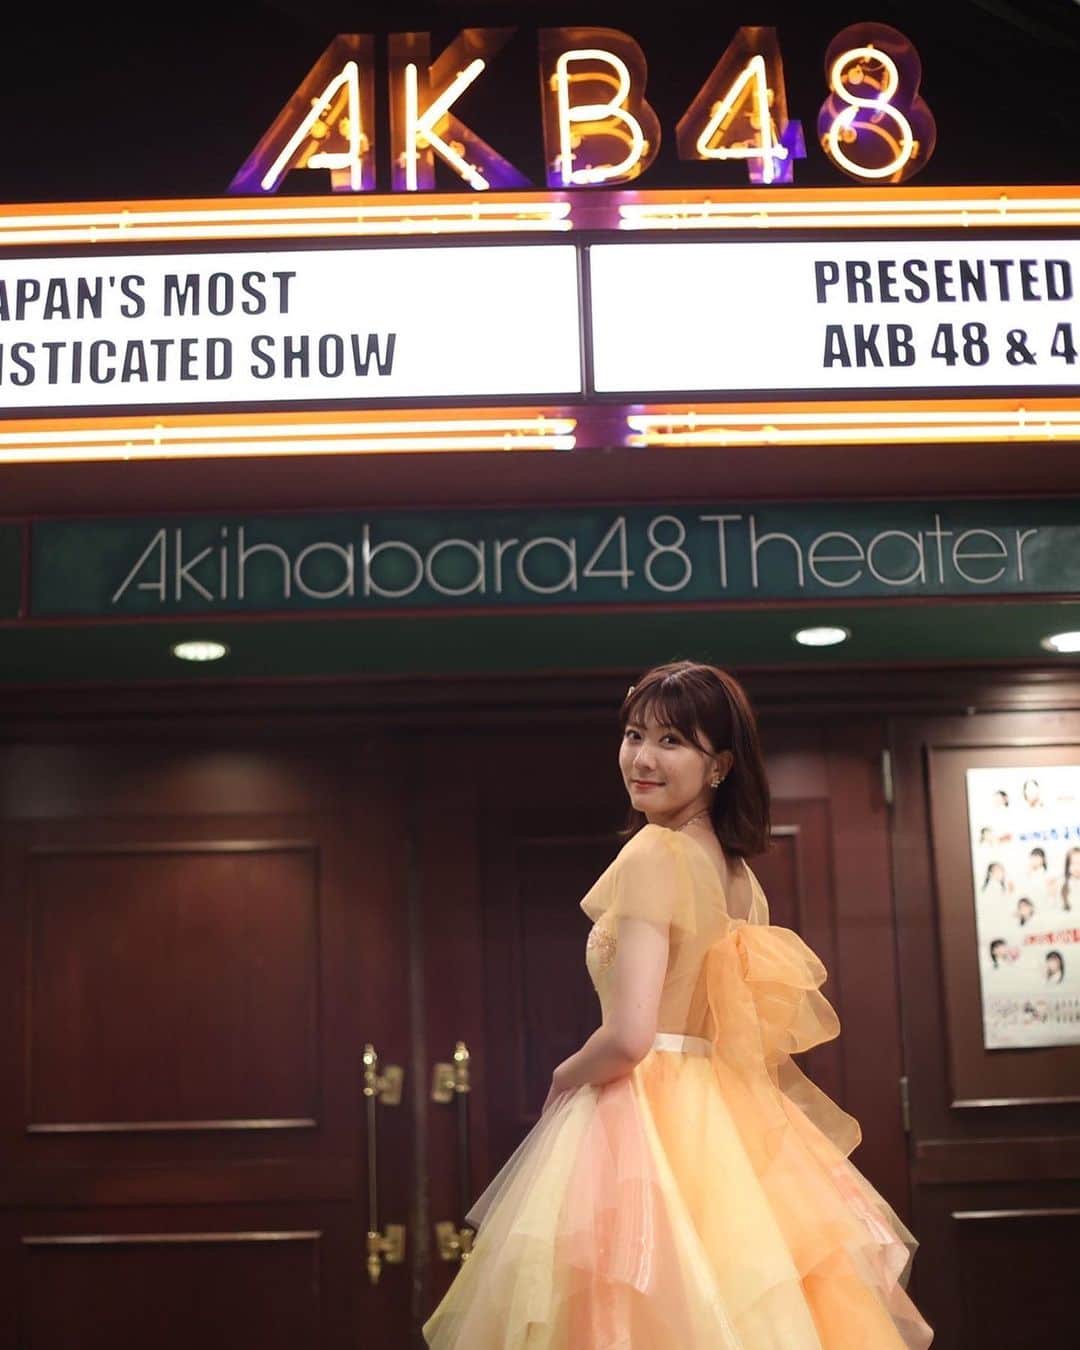 清水麻璃亜のインスタグラム：「* 8月1日、AKB48を卒業しました🌼 ３日経った今でも卒業公演で感じた幸せで胸がいっぱいです。ありがとうございます！ 卒業公演も、そしてこの９年間も、ほんっっっとに楽しかった！！  小学生のころに出会ったAKB48を大好きになって、劇場公演の映像を毎晩見るのが日課でした。AKB48の真似をして毎日歌って踊ってる私に「そんなに好きだったら自分がAKBになっちゃえばいいじゃん」と笑いながら発した兄の言葉が今でも忘れられません！ 今思うとあれがきっかけだったのかもしれません🤝🏻 それから何度もオーディションをこっそり受けては落ちてを繰り返し、諦めかけた頃に初めて行った握手会で、やっぱりアイドルになりたい！と強く思ったのを覚えてます😌 その直後にチーム8のオーディションを知らされて、群馬県代表としてAKB48に加入する事になりました！夢って叶うんだ…と感動したけど、いざチーム8として活動してみると、思っていたような活動ではなくて、私たちはAKB48なのにAKB48じゃないんだと落ち込んだ時もありました。 でも私達なりに私達の活動を続けていたら、一緒に全国を回ってくれるファンの方や、会いに行くのを待っていてくれるファンの方が増えて、どんどん仲間が増えていく感覚になりました🐝 何度も言うけど、メンバーもスタッフもファンの皆さんもみんな合わせてのチームだったと思うんです！ そんな仲間達と日本全国を回って、地域の方と近づけるようなイベントに参加したり、いろんなホールやアリーナの大きなステージに立って、夢のような景色をたくさん見ることができました。 今でも忘れられない景色や音がたくさんあります。 そんなかけがえの無い思い出や経験をさせてくれたチーム8と、チーム8で過ごした時間は私の宝物です！！ 改めて、チーム8を愛してくれてありがとうございました！  AKB48を好きだった私が、AKB48に入ったら自分を好きになってくれる人にたくさん出会えました。 私以上に喜んでくれたり悔しがってくれたり、熱く想ってくれる方にたくさん出会いました。 そんな皆さんのおかげで、苦しい事も乗り越えられたし、厳しい事も挑戦できたし、楽しいことはより楽しむ事ができました！そしてアイドルとしてステージに立つことができた🌻 昔から応援してくれた方も、最近好きになってくれた方も、途中で離れてしまった方も、皆さんに心から感謝しています。 そんな皆さんに、まりあを好きでいてよかったとまりあを選んだ自分は正解だったと思ってもらえる日が来るよう、これからまた頑張って行きたいと思います！  職業アイドルは卒業しましたが、これからもみなさんのエネルギーになりたいし、一緒に一喜一憂したいし、楽しい時間は共有し、ちょっとでも背中をおせる、アイドルのような存在でいられたらと思います🔥  清水麻璃亜として、今後も自分らしくコツコツとマイペースに前に進んでいけるよう精進します！ 見守っていただけたら、いや、付いてきていただけたら嬉しいです！  とにかく、ほんとにほんとに楽しかった！ おばあちゃんになってもいつ思い出しても輝いてる９年間でした。この輝きを超えるような日々をこれから迎えられるように、頑張ります！！！ これからもよろしくお願いします！！ 💐」